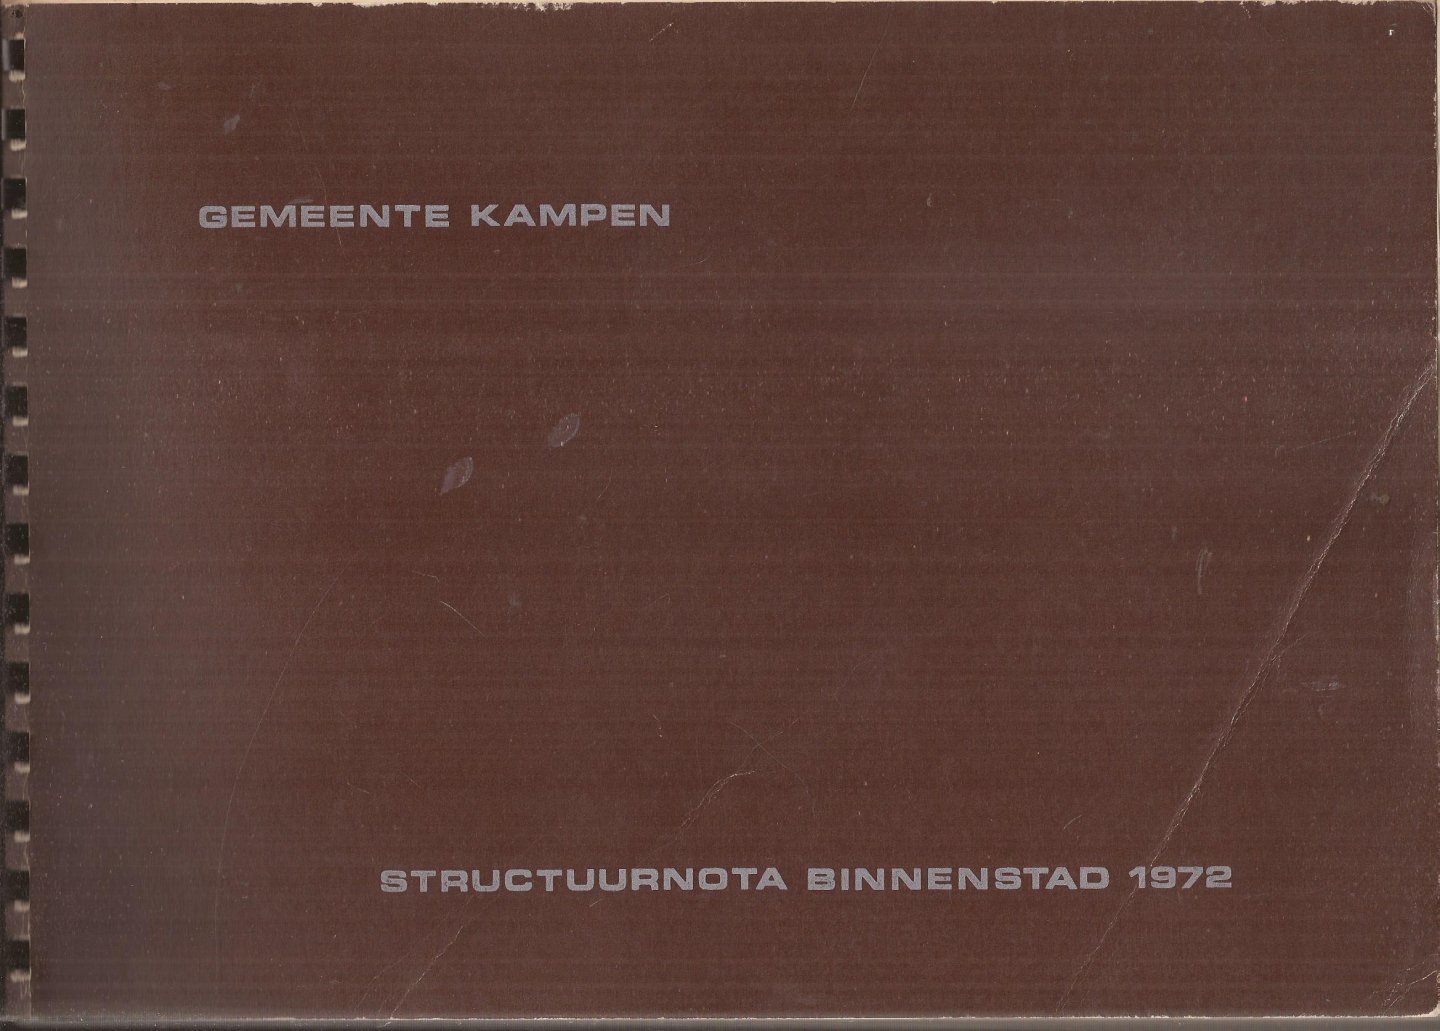 (Afdeling Stadsontwikkeling Gemeente Kampen) - Structuurnota binnenstad gemeente Kampen 1972